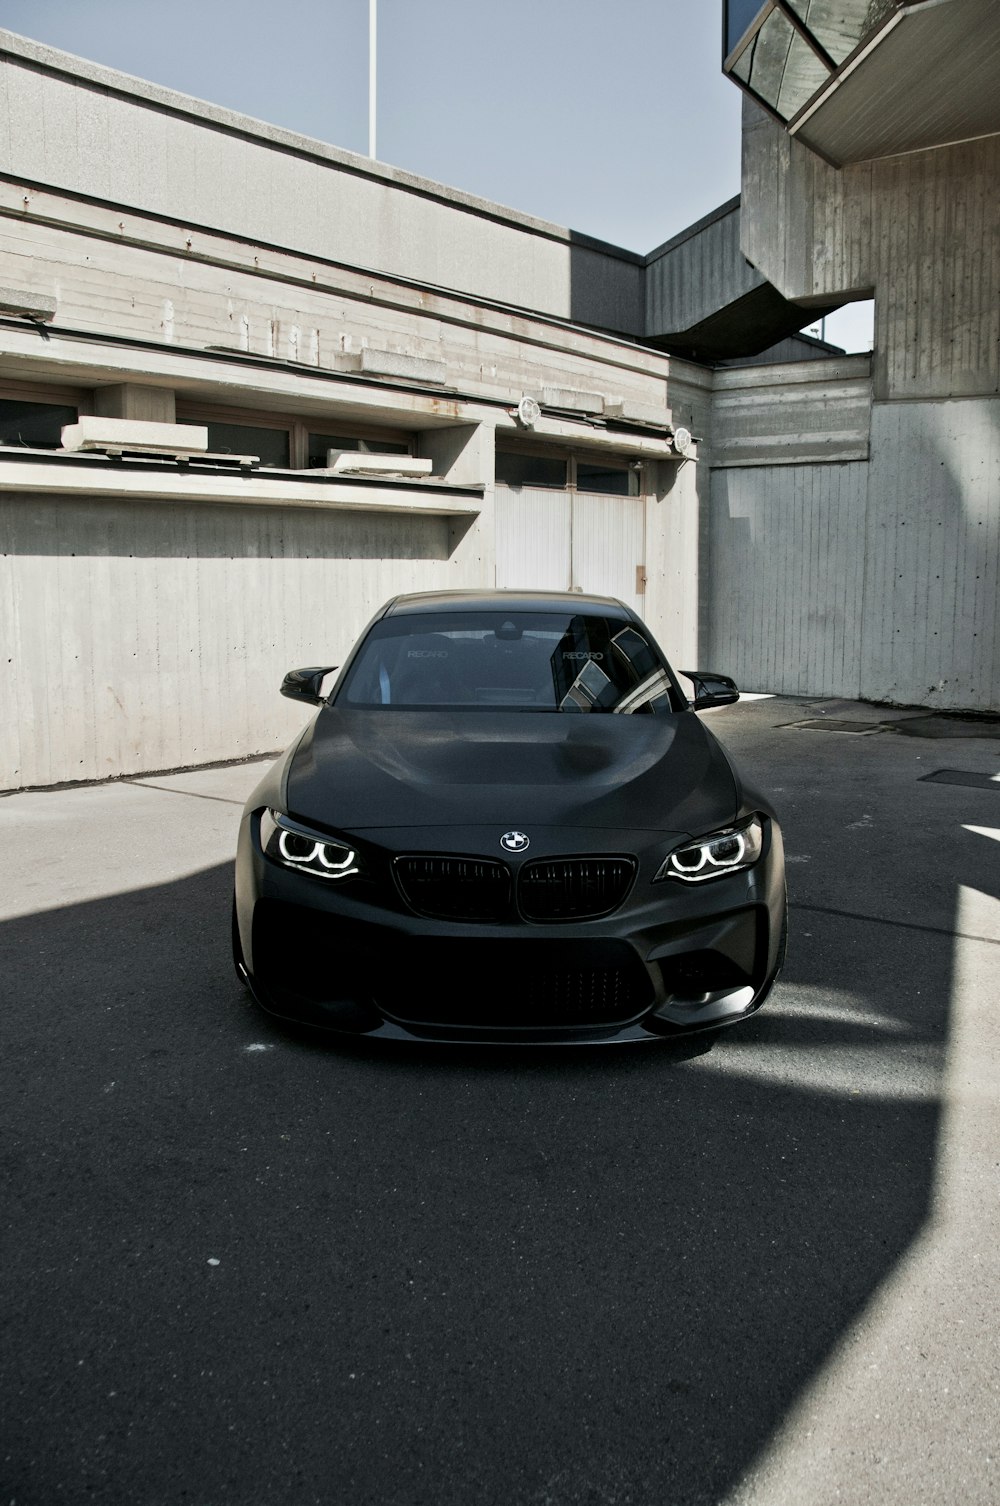 Voiture BMW noire garée sur un sol en béton gris pendant la journée